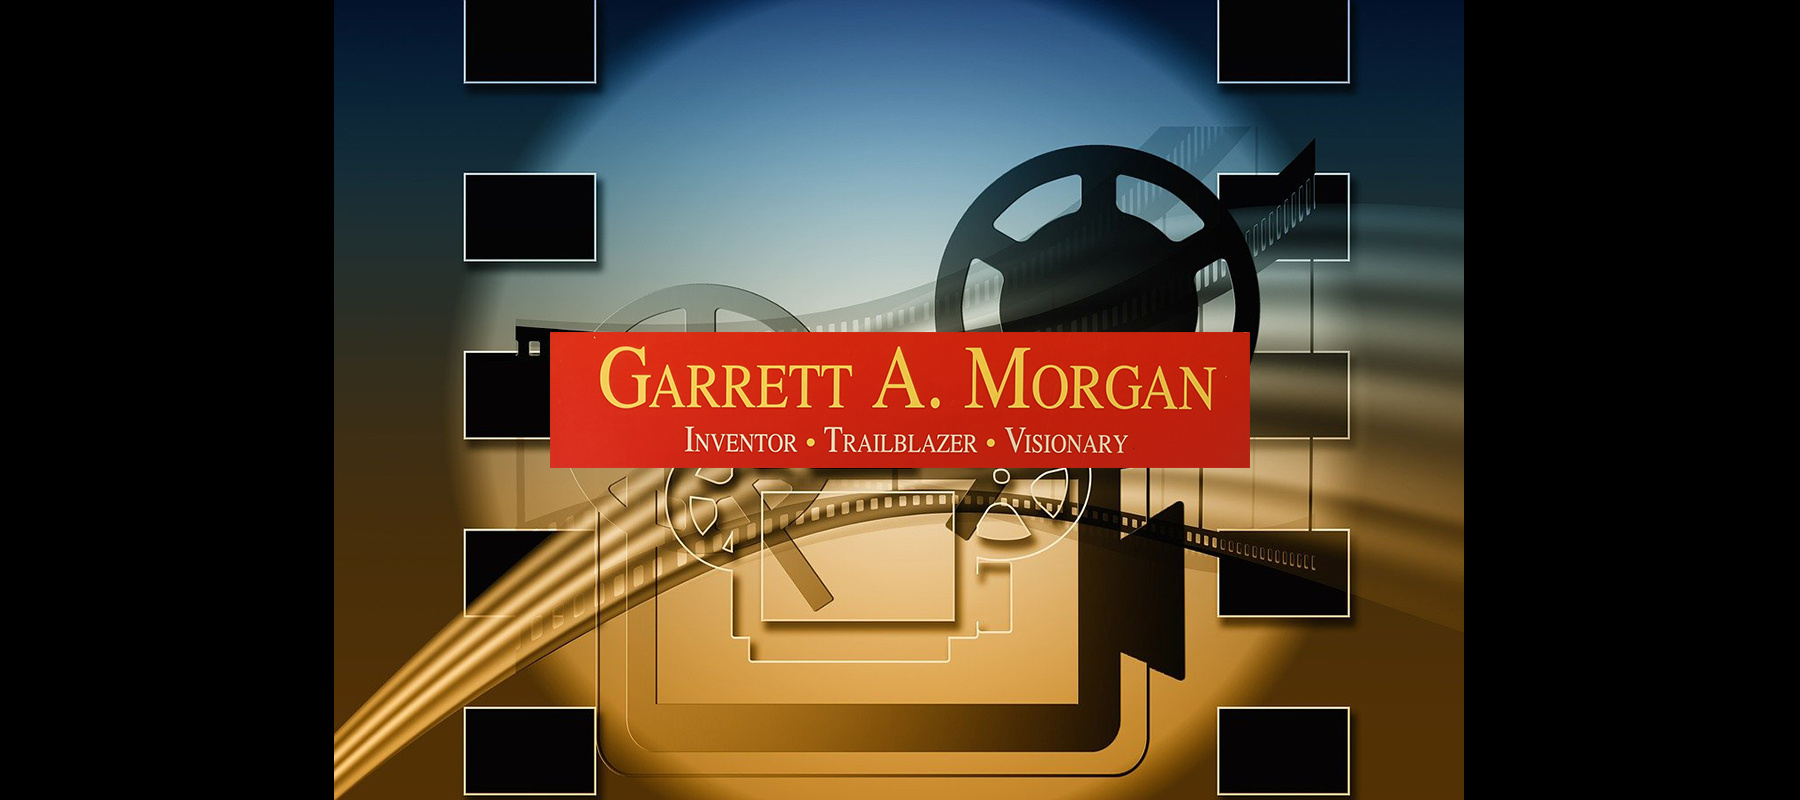 Garrett Morgan, Inventor, Trailblazer, Visionary